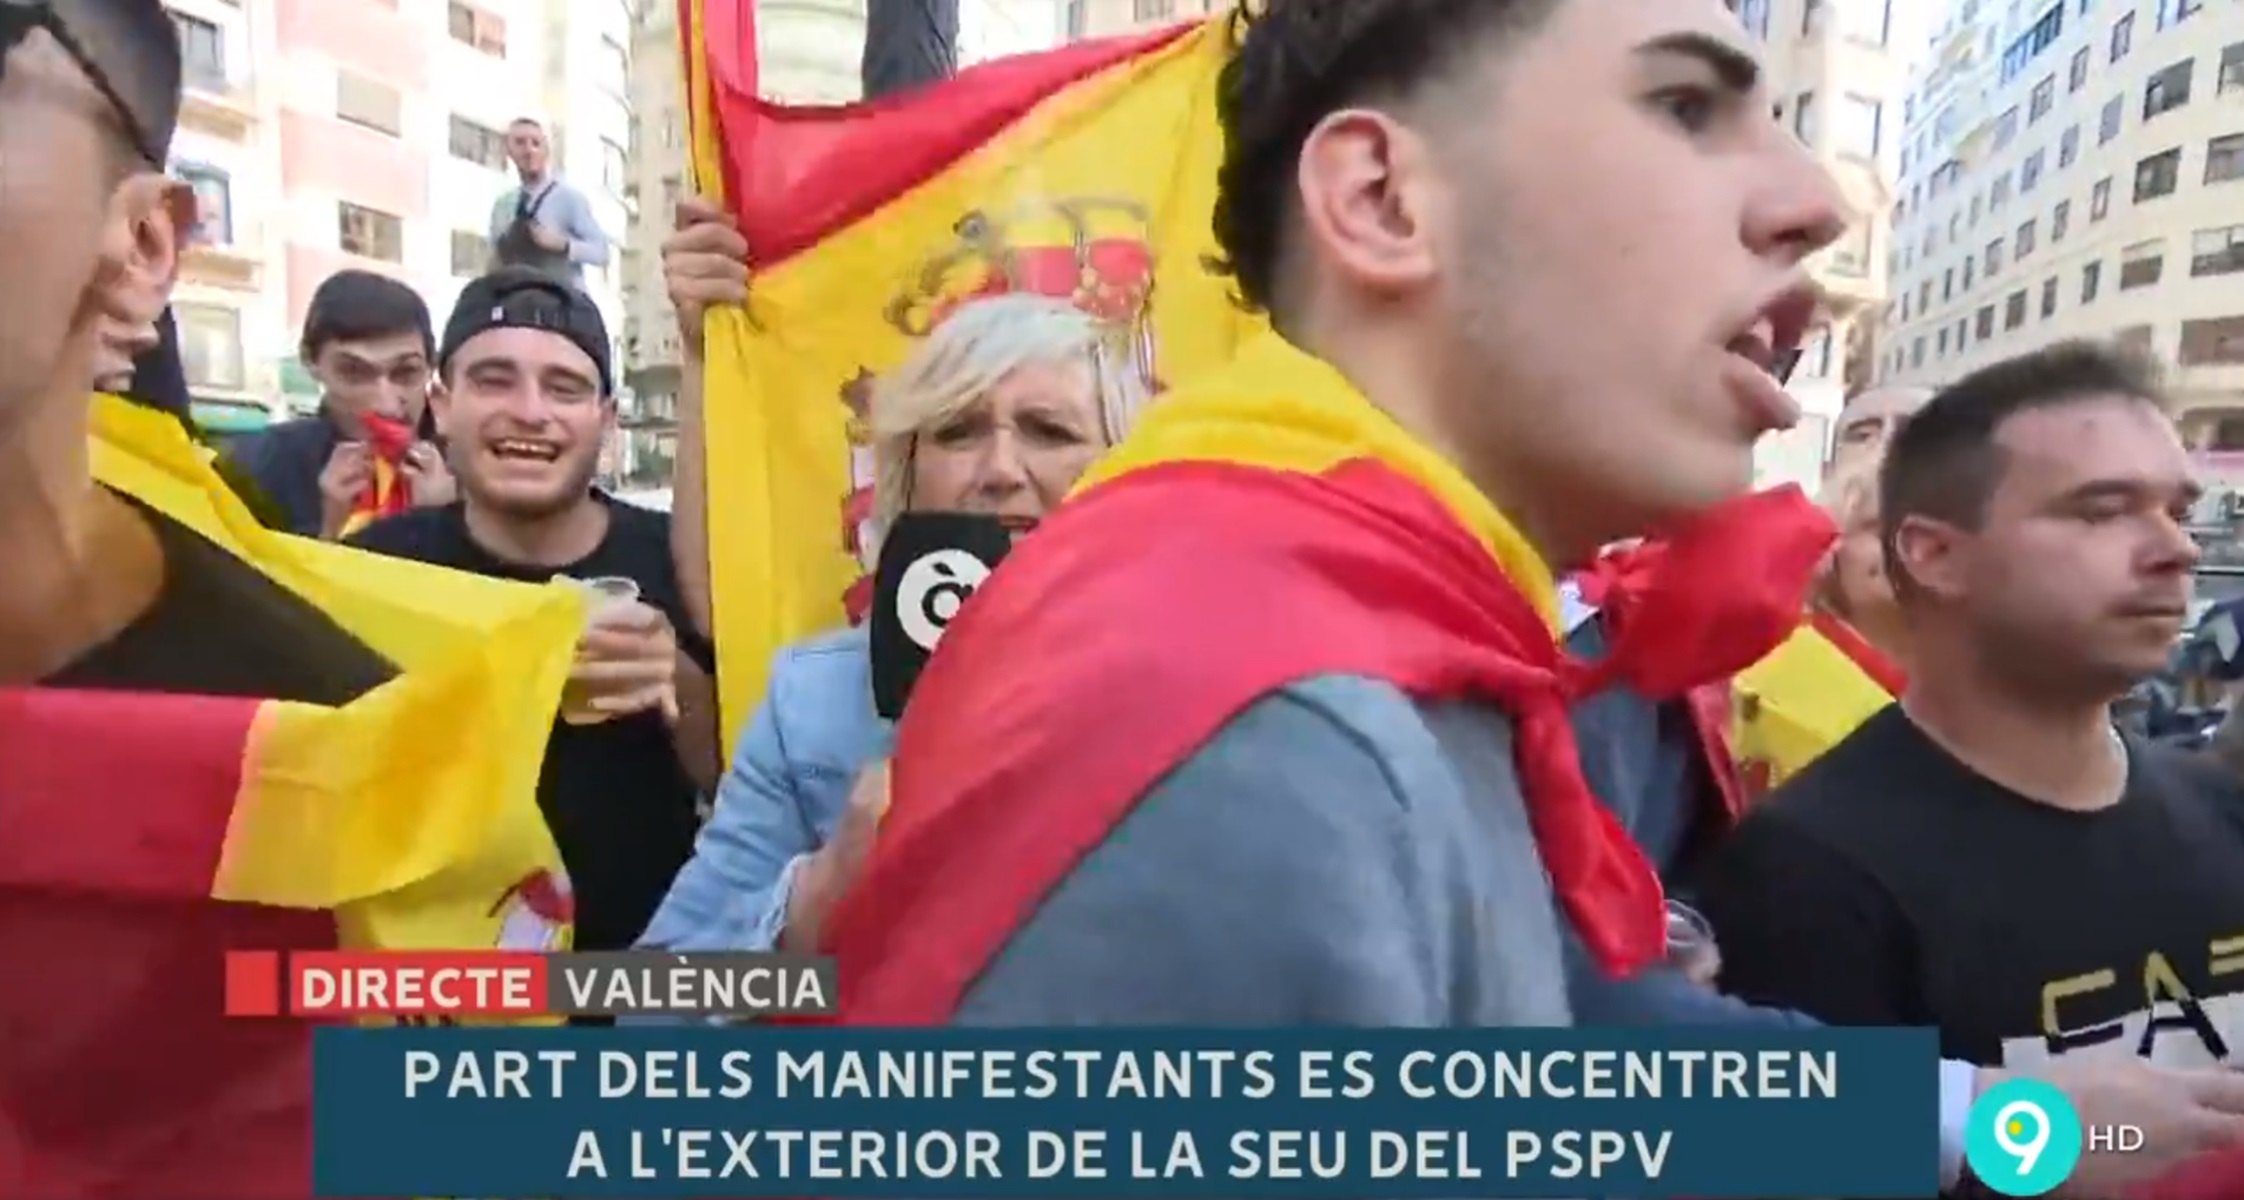 Agreden a una periodista en directo en una manifestación españolista en Valencia | VÍDEO